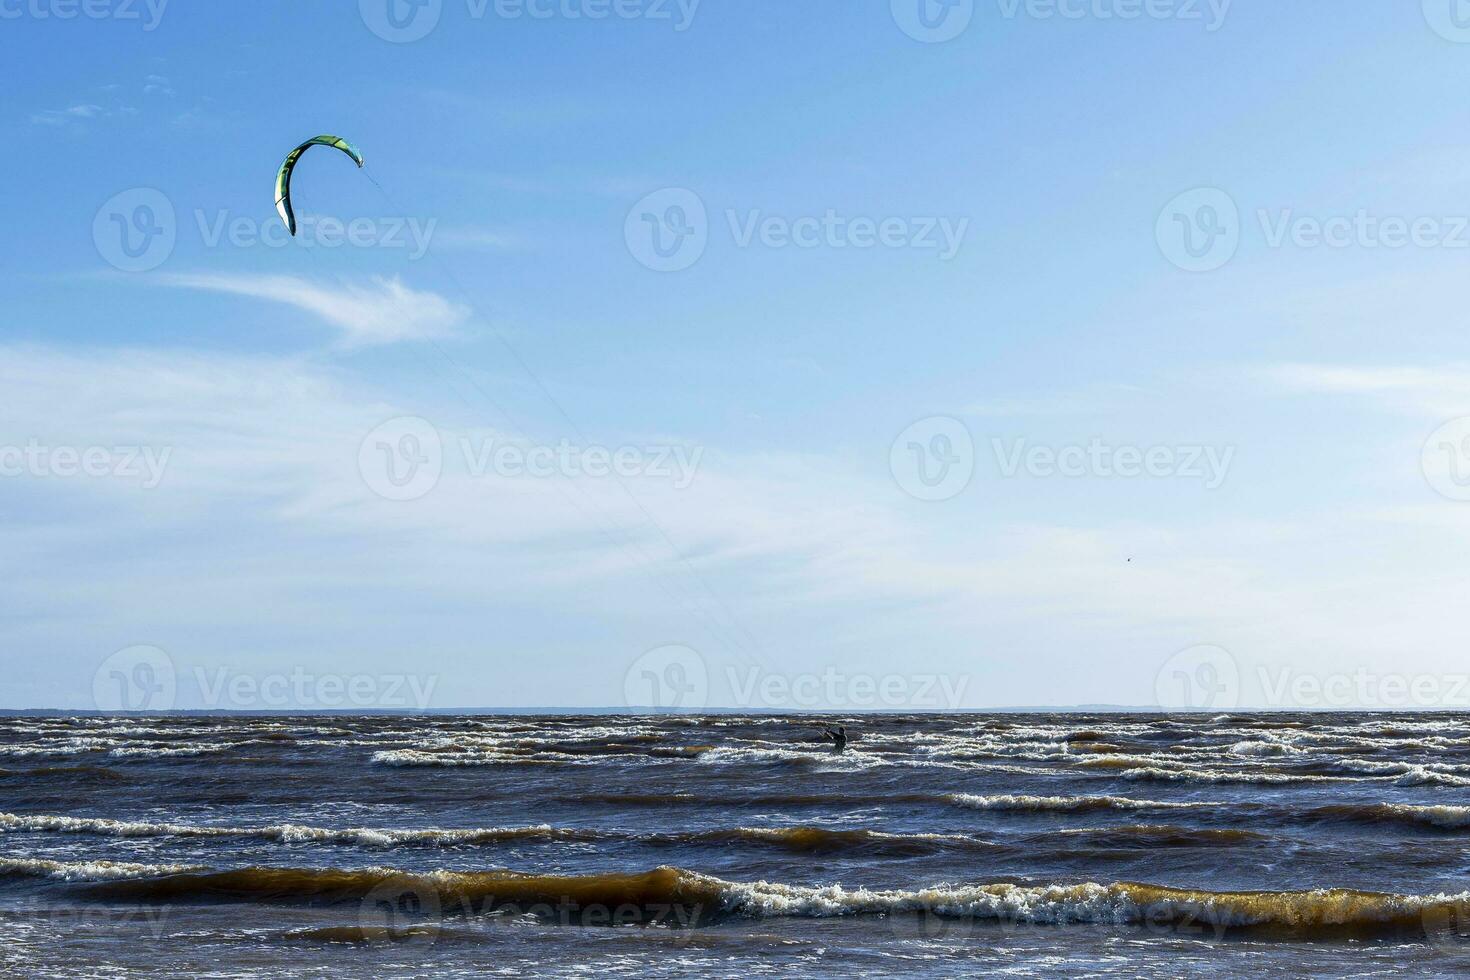 kitesurf às mar enquanto realizando truques. liberdade, força, sonhos. foto